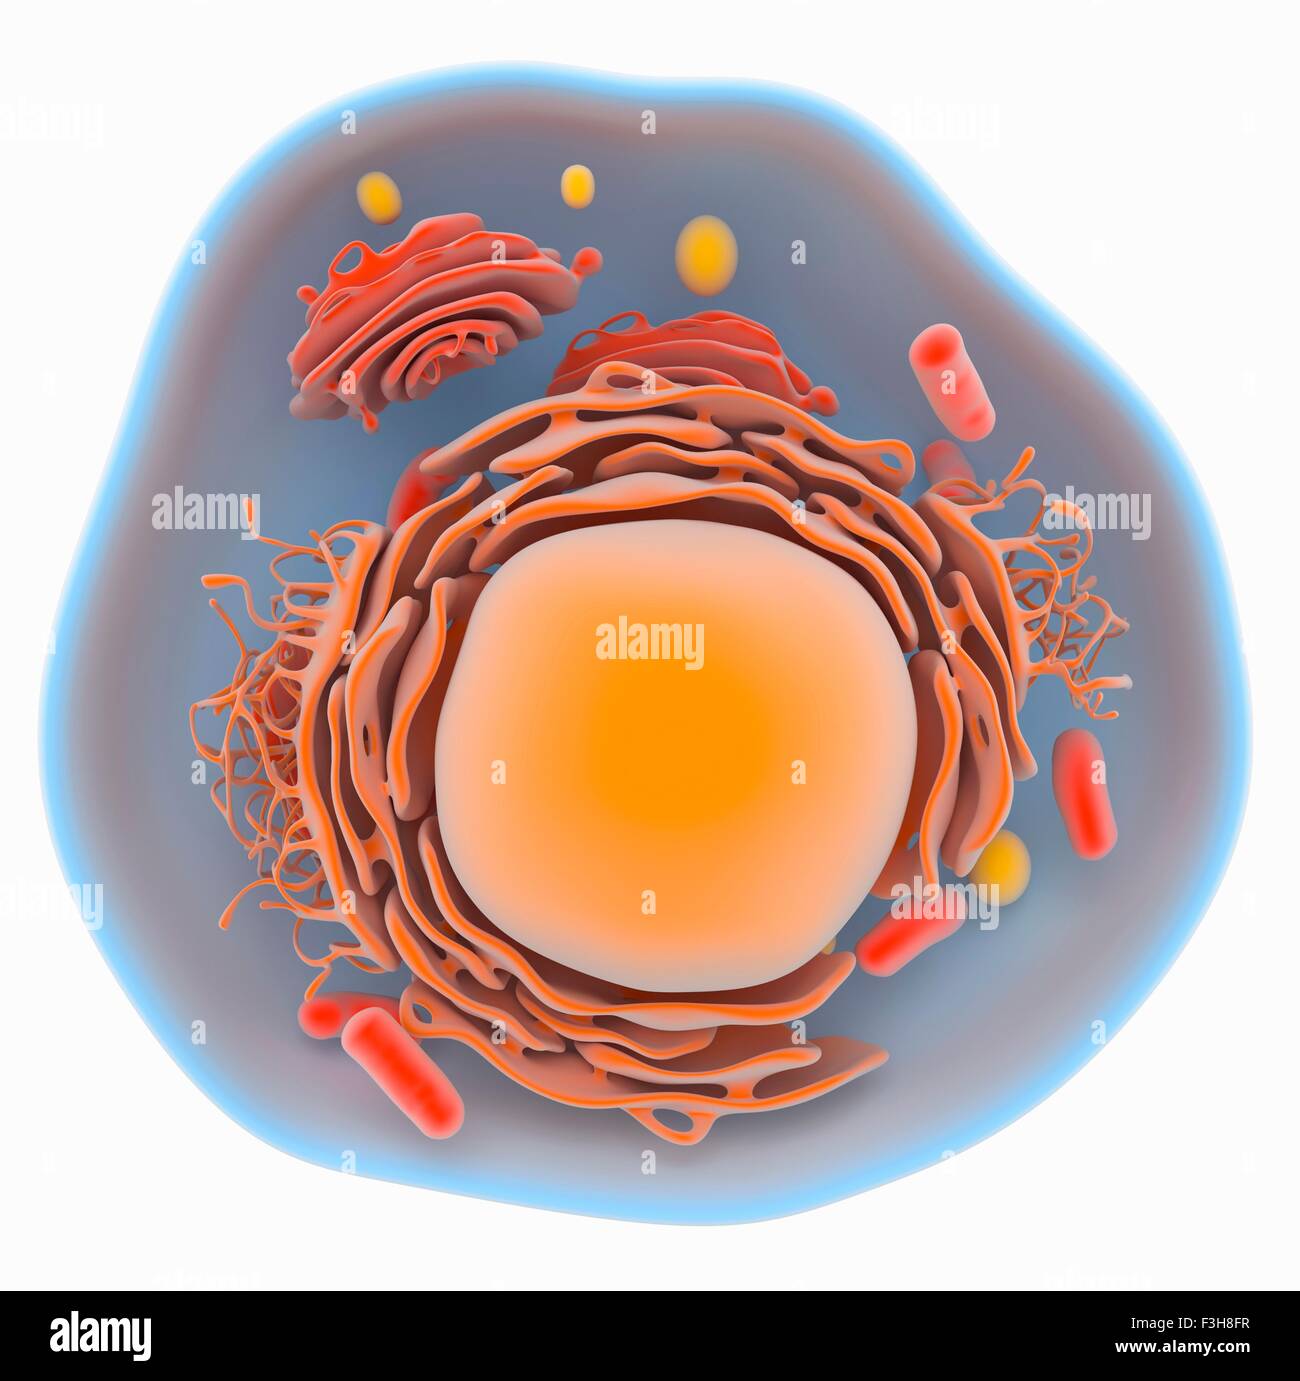 Abbildung einer eukaryotischen Zelle zeigt die wichtigsten Organellen, wie z. B. Golgi, endoplasmatische Retikulum, Mitochondrien, Zellkern Stockfoto